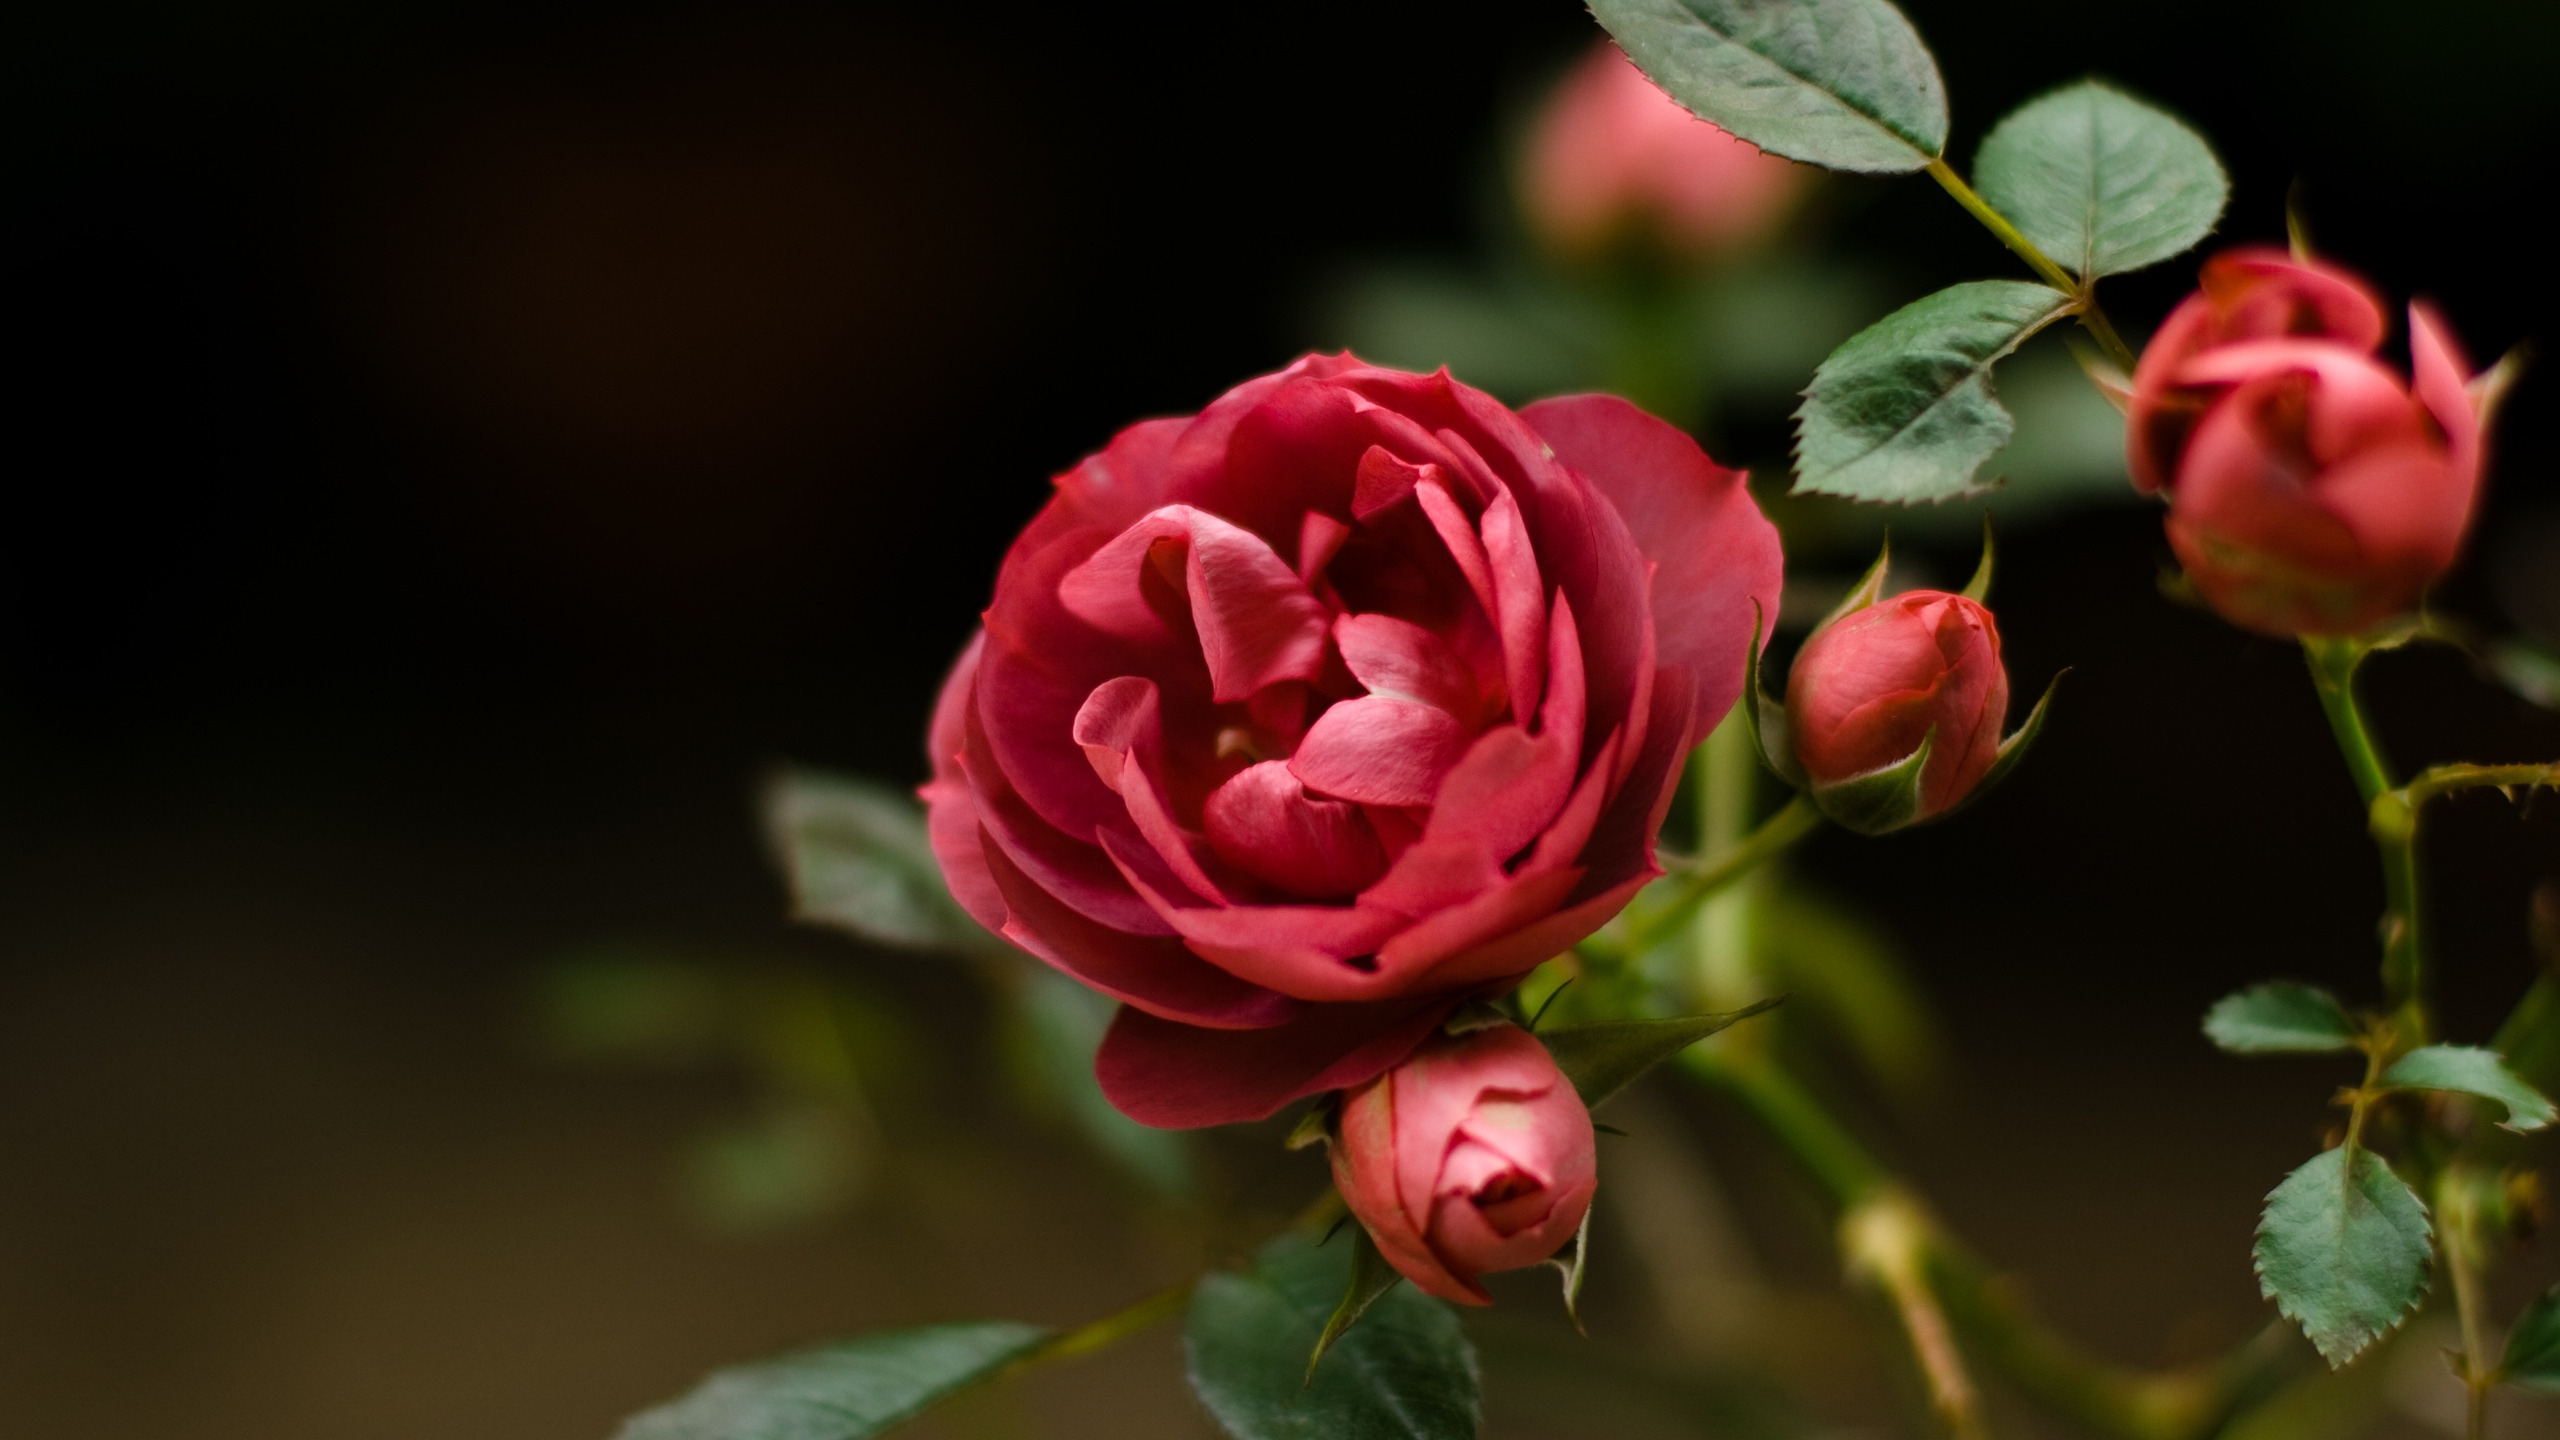 Rose Flower for 2560x1440 HDTV resolution